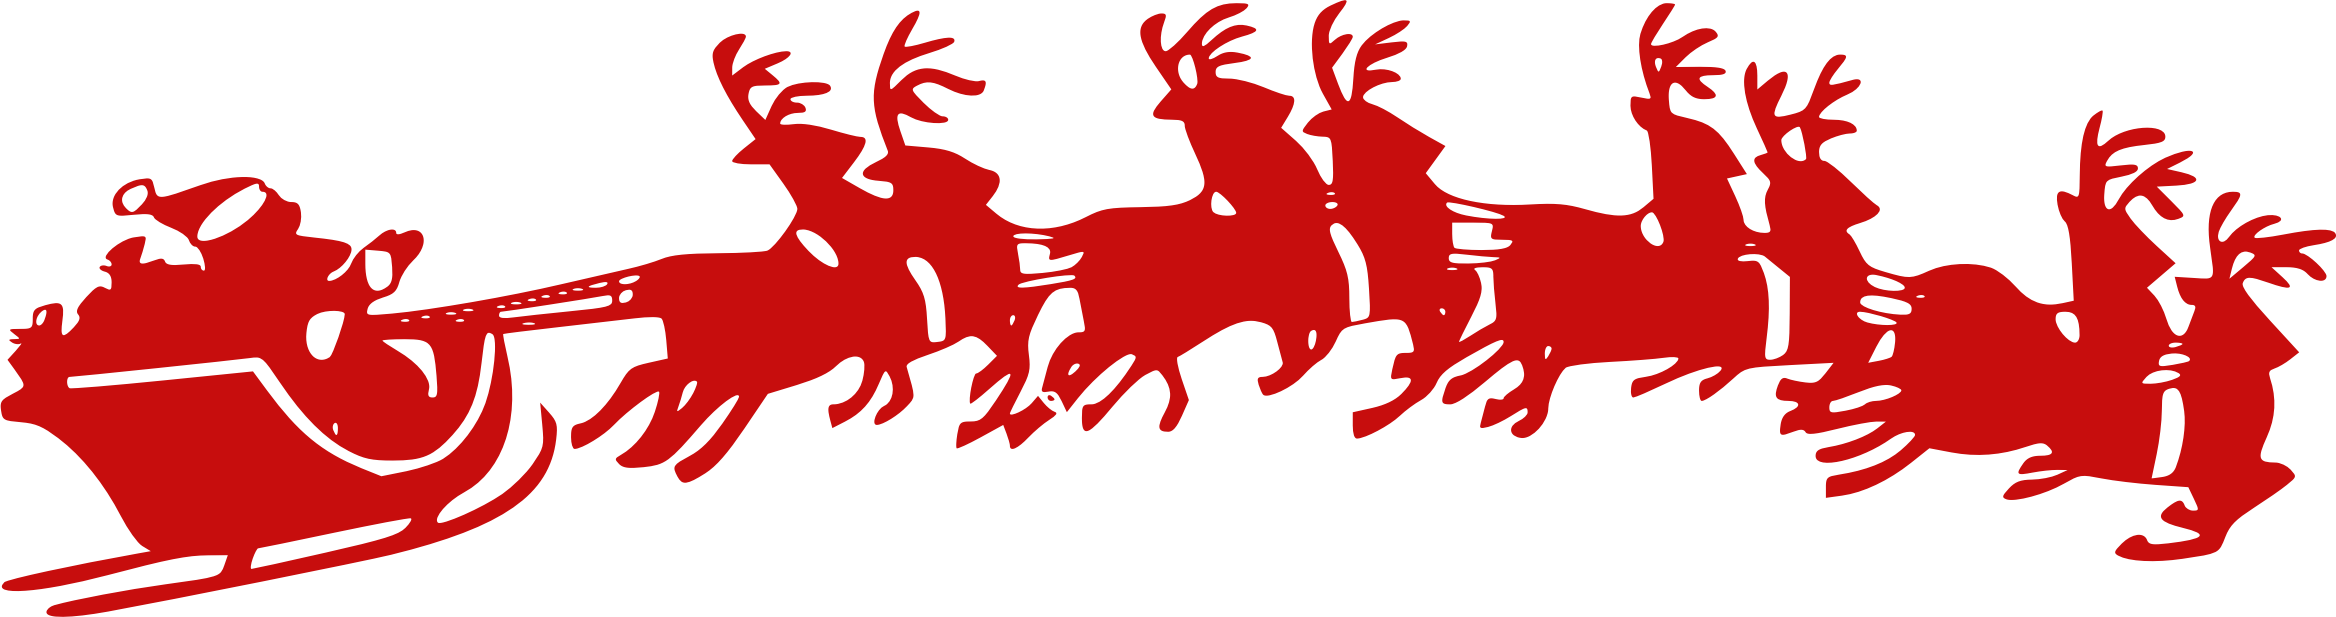 Santa Sleigh Clipart god jul alle sammen norwegian christmas vocabulary